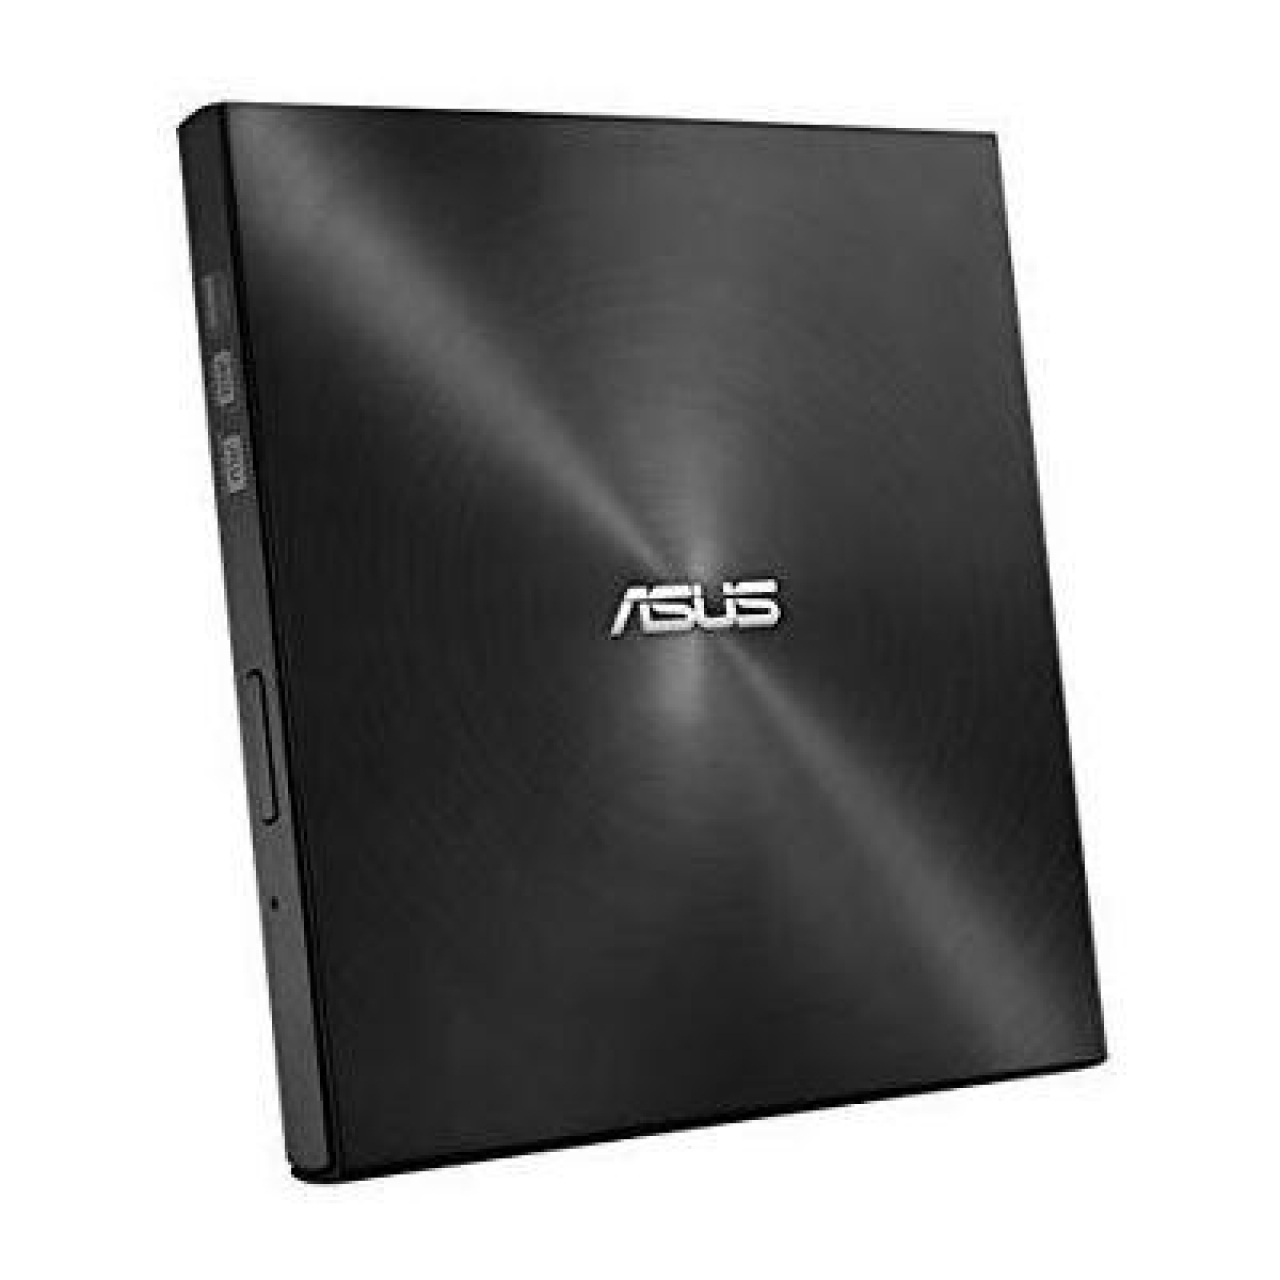 ASUS  SDRW-08U5S-U Windows ve Mac OS ile uyumlu 8X DVD yazıcı